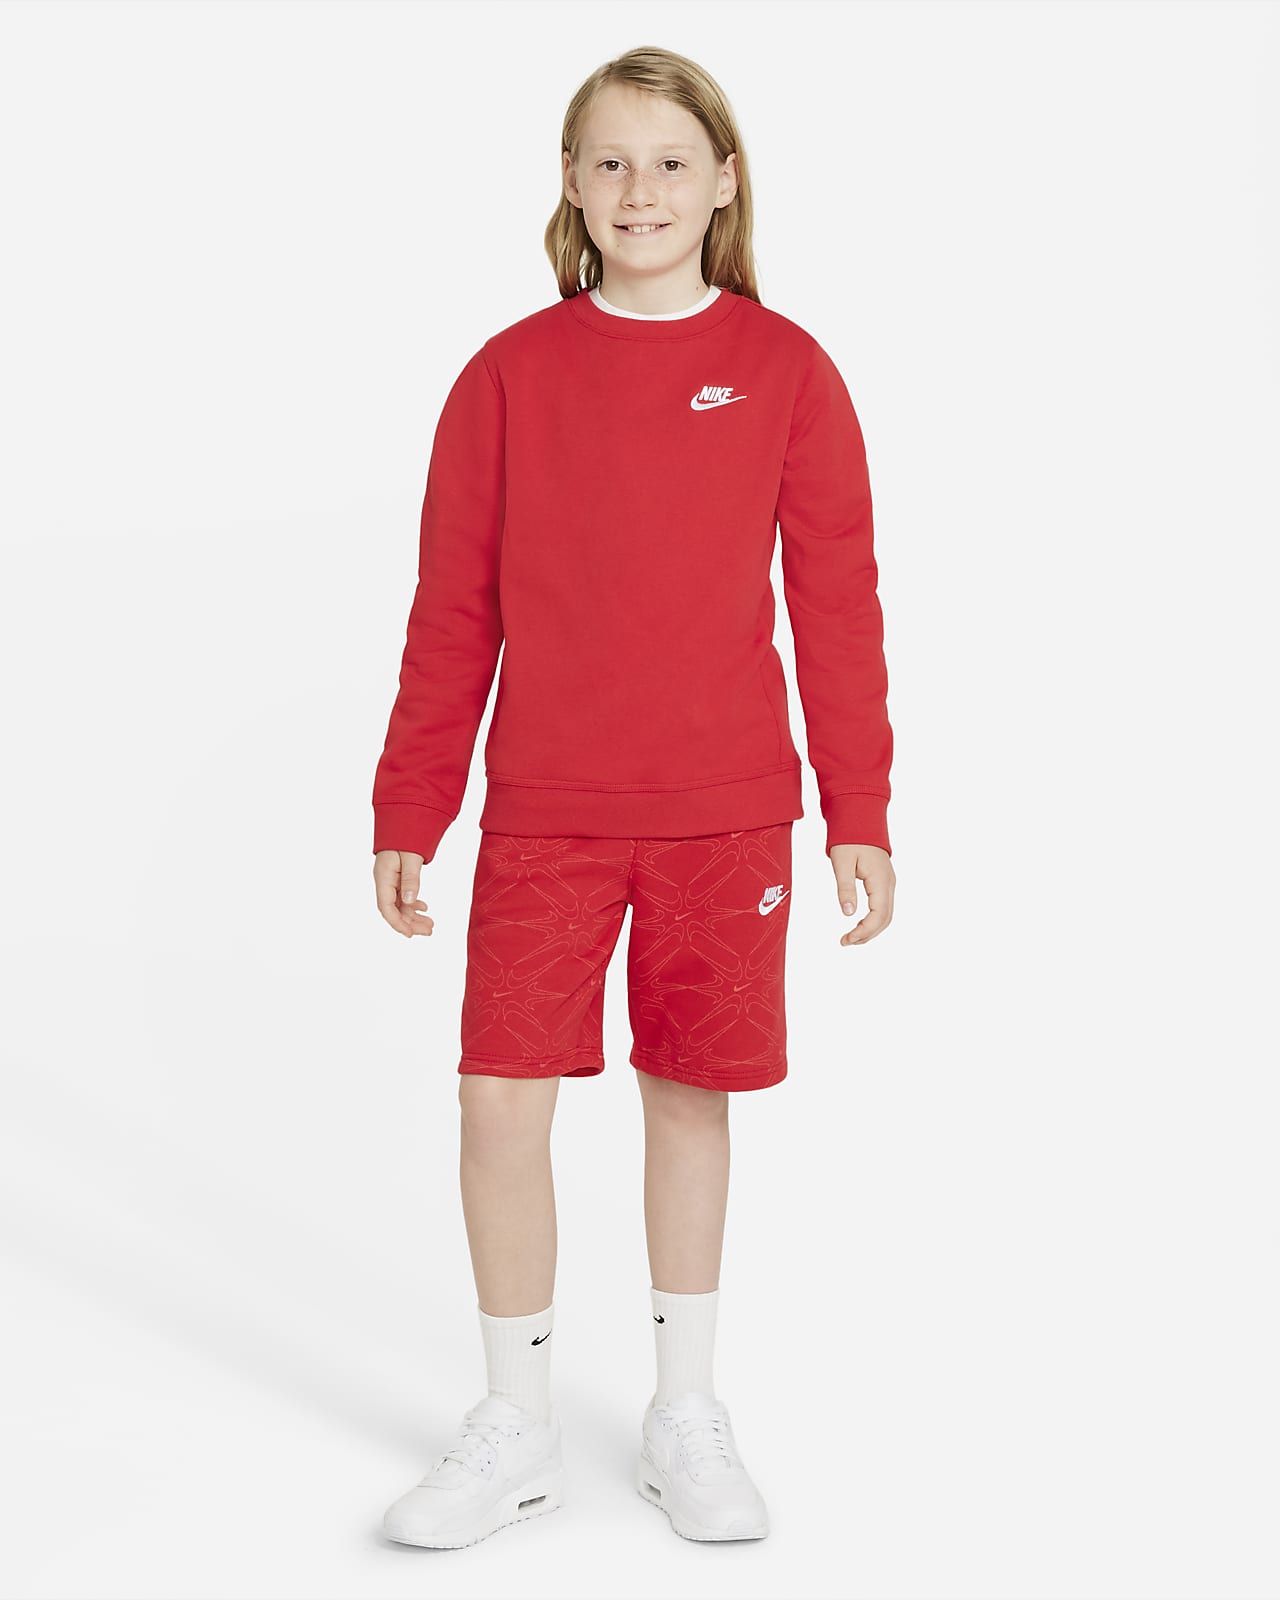 Nike Sportswear Club Shorts. (Boys\') Kids\' Big